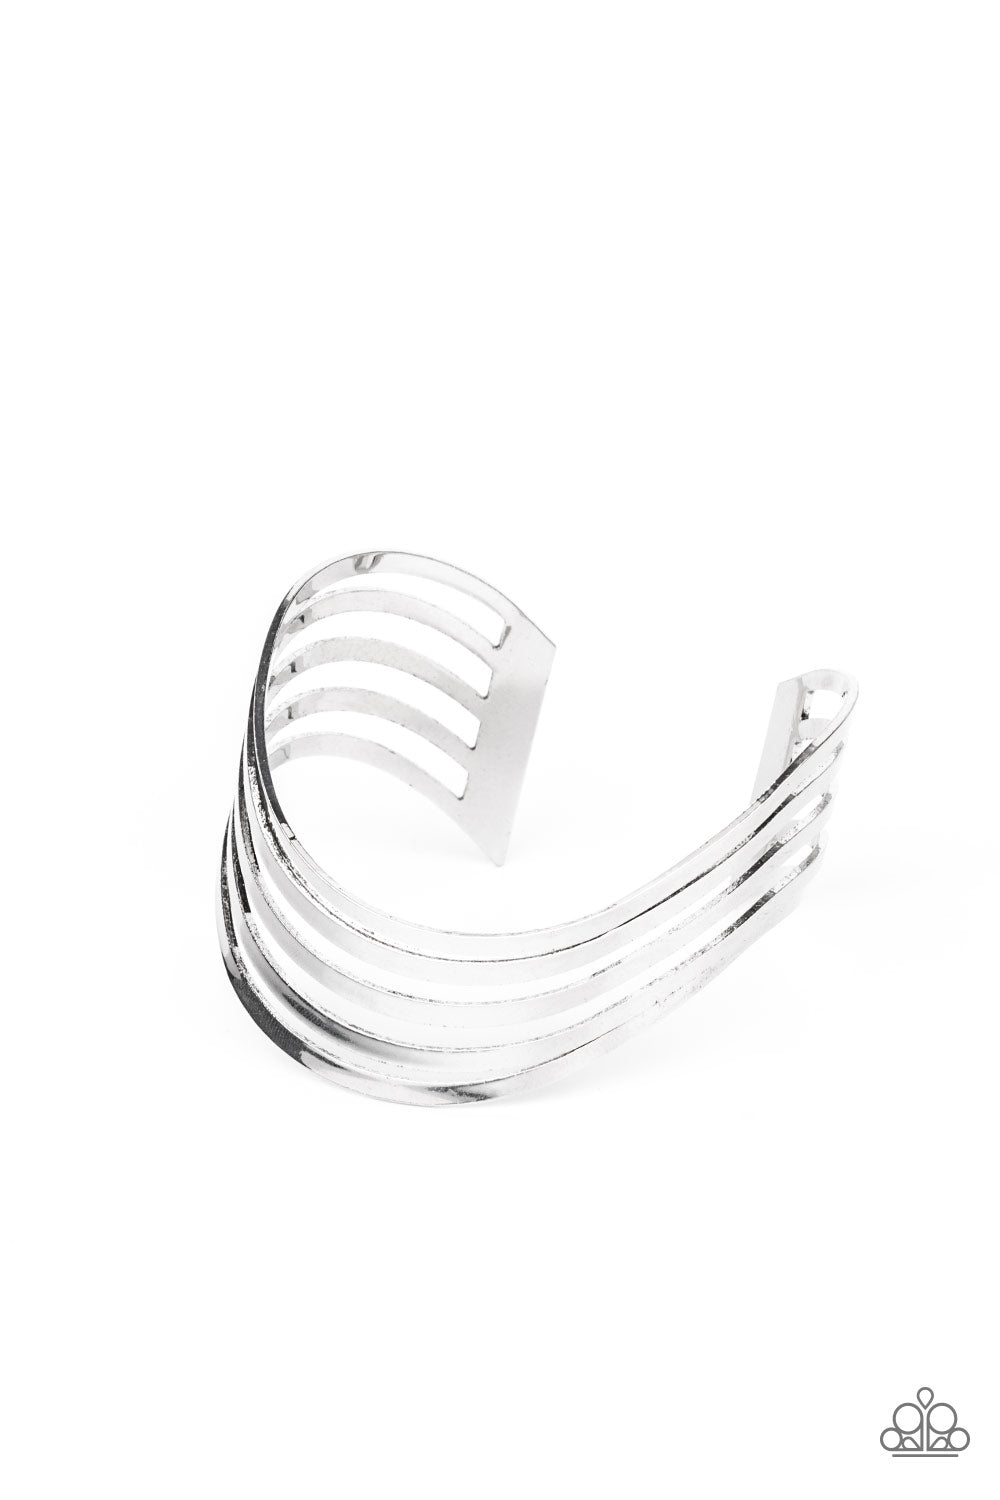 Tantalizingly Tiered - Silver Bracelet